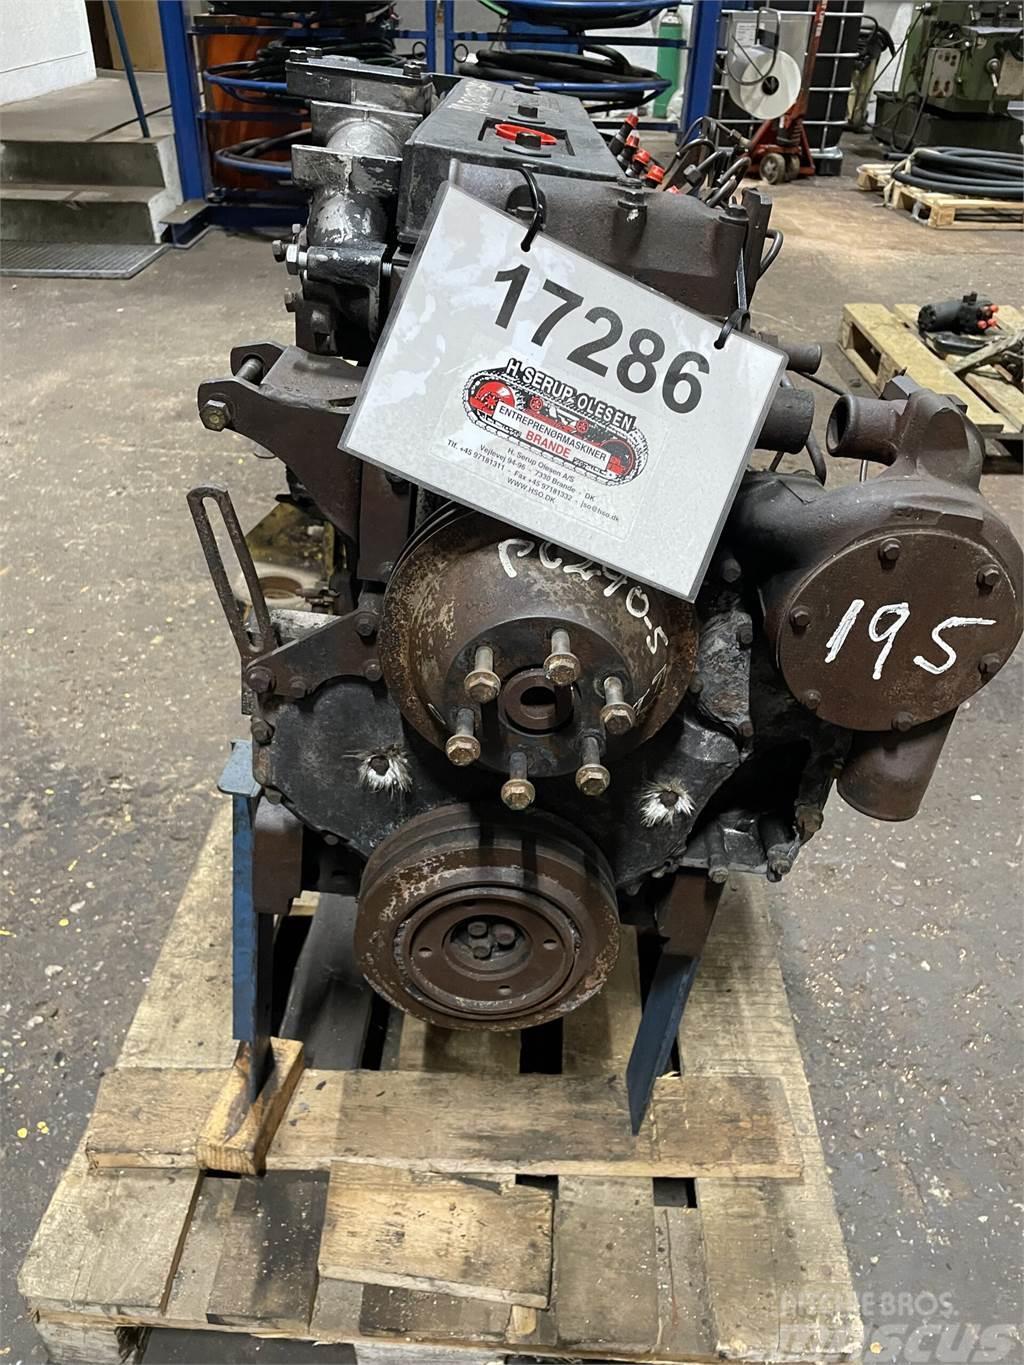 Perkins 1006 motor, brandskadet エンジン